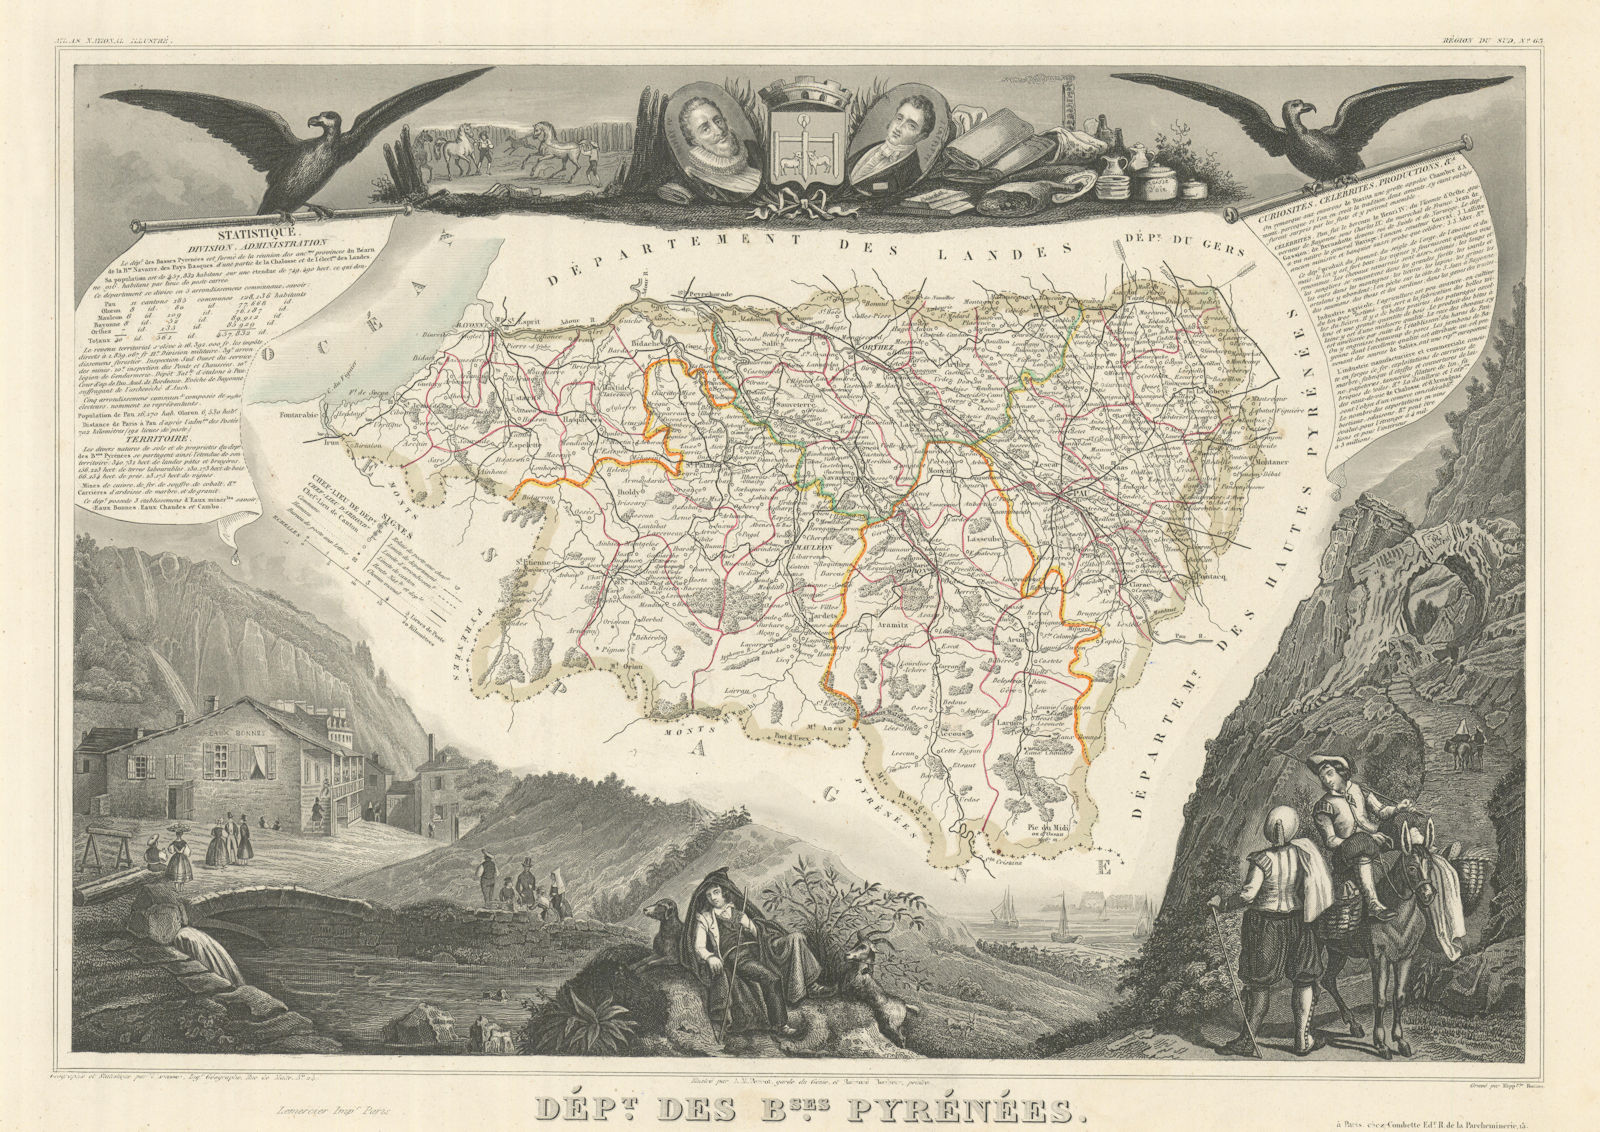 Associate Product Département des BASSES-PYRÉNÉES. Pyrénées-Atlantiques. LEVASSEUR 1856 old map